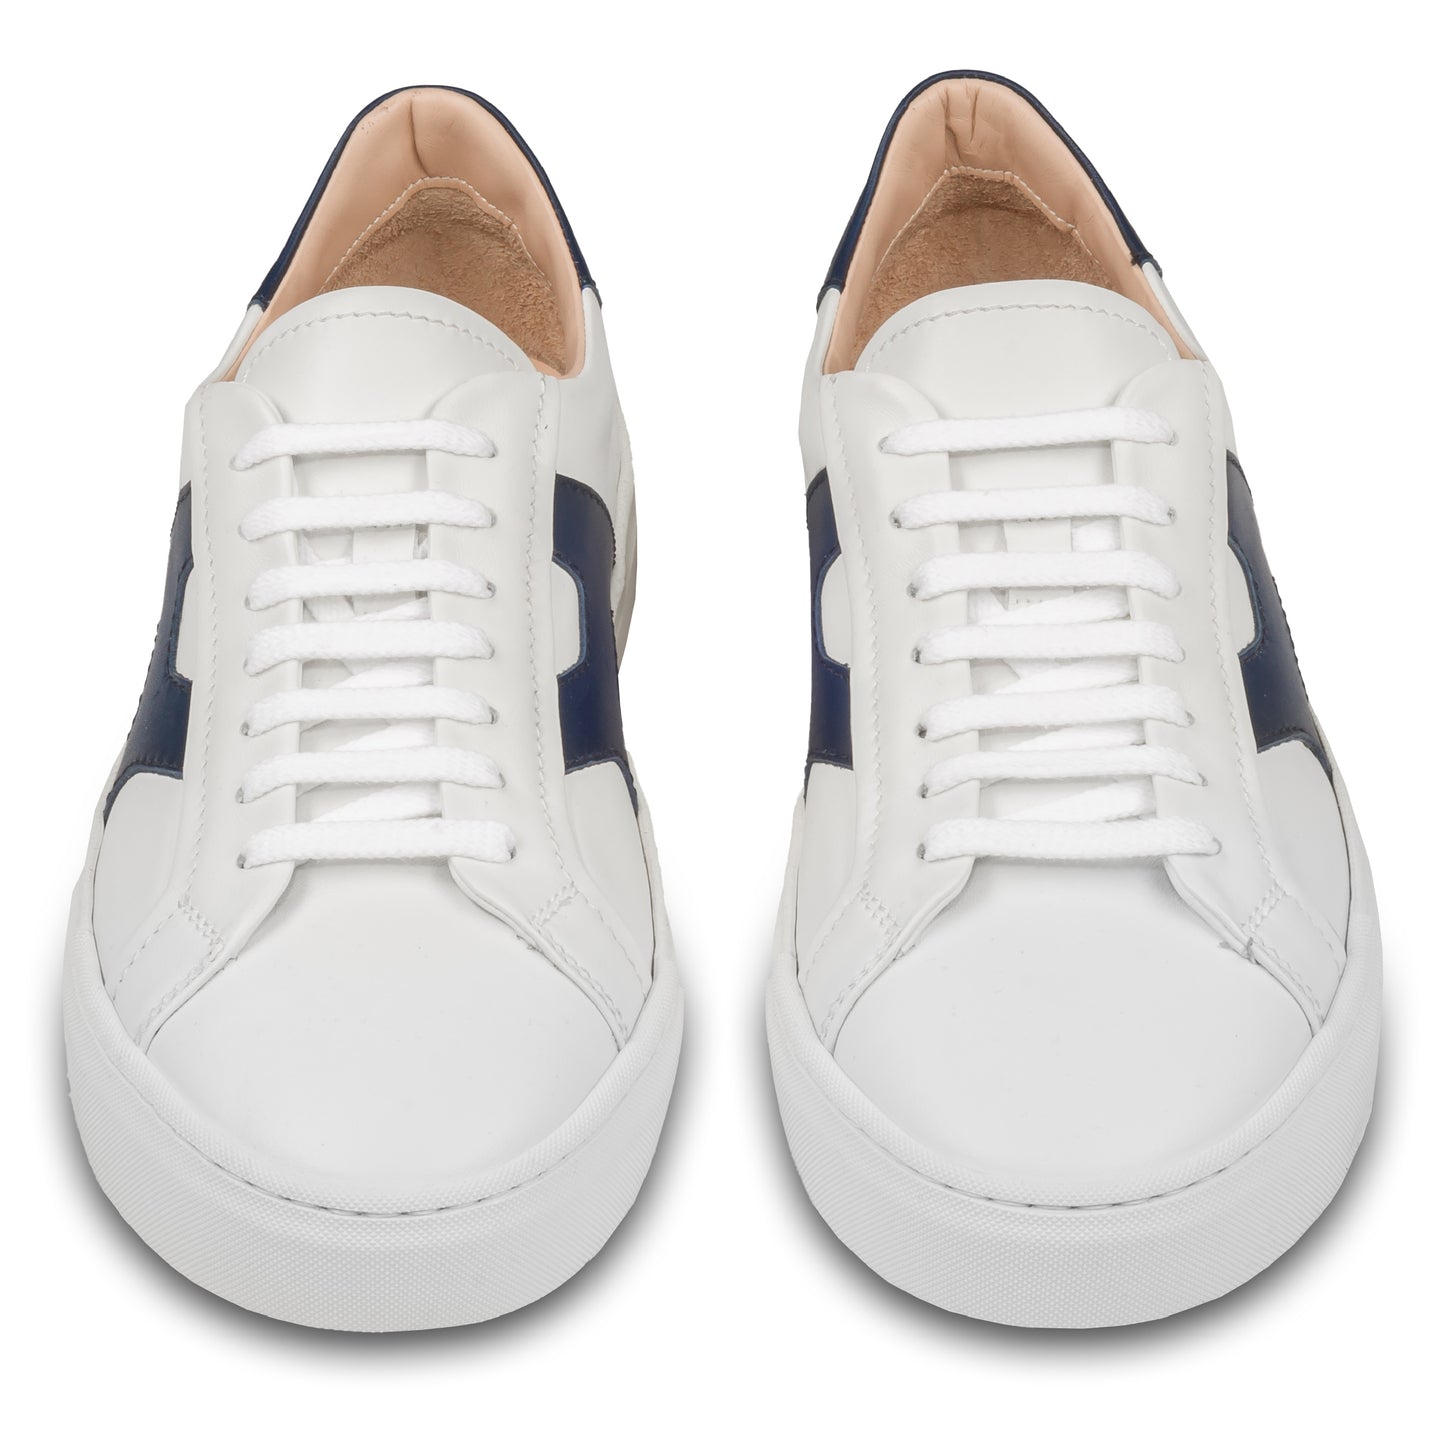 Rossano Bisconti – Italienische Herren Sneaker in weiß, mit blauen Applikationen im Santoni Style. Aus Kalbsleder mit weißer Sohle. Handgefertigt. Paarweise Ansicht von vorne.